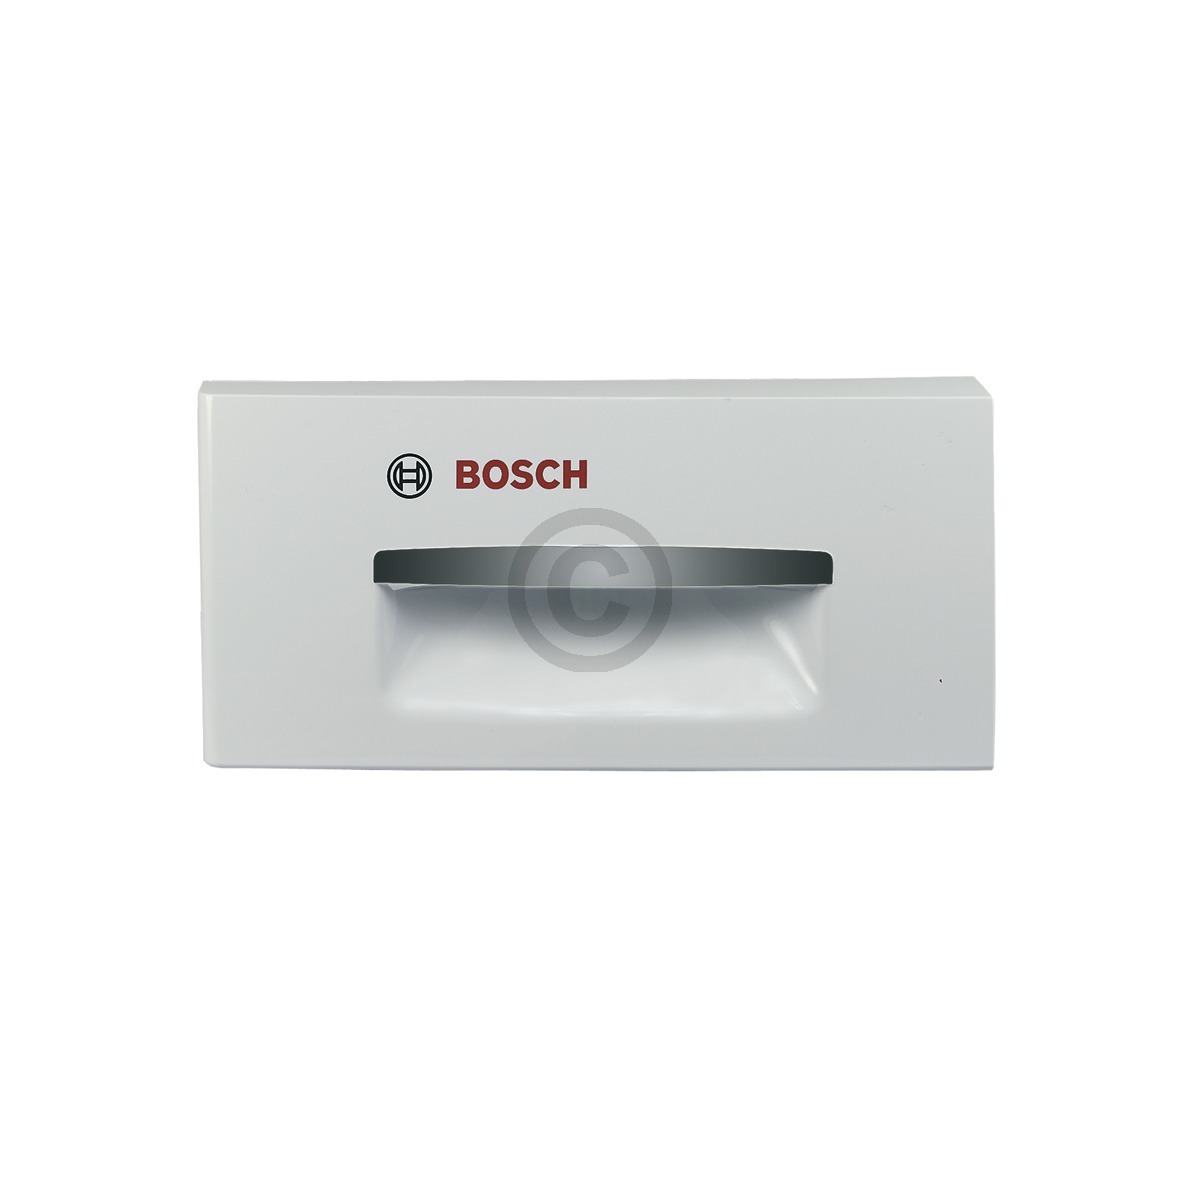 Griffplatte für Wasserbehälter, bedruckt "Bosch" 00646773 646773 Bosch, Siemens,